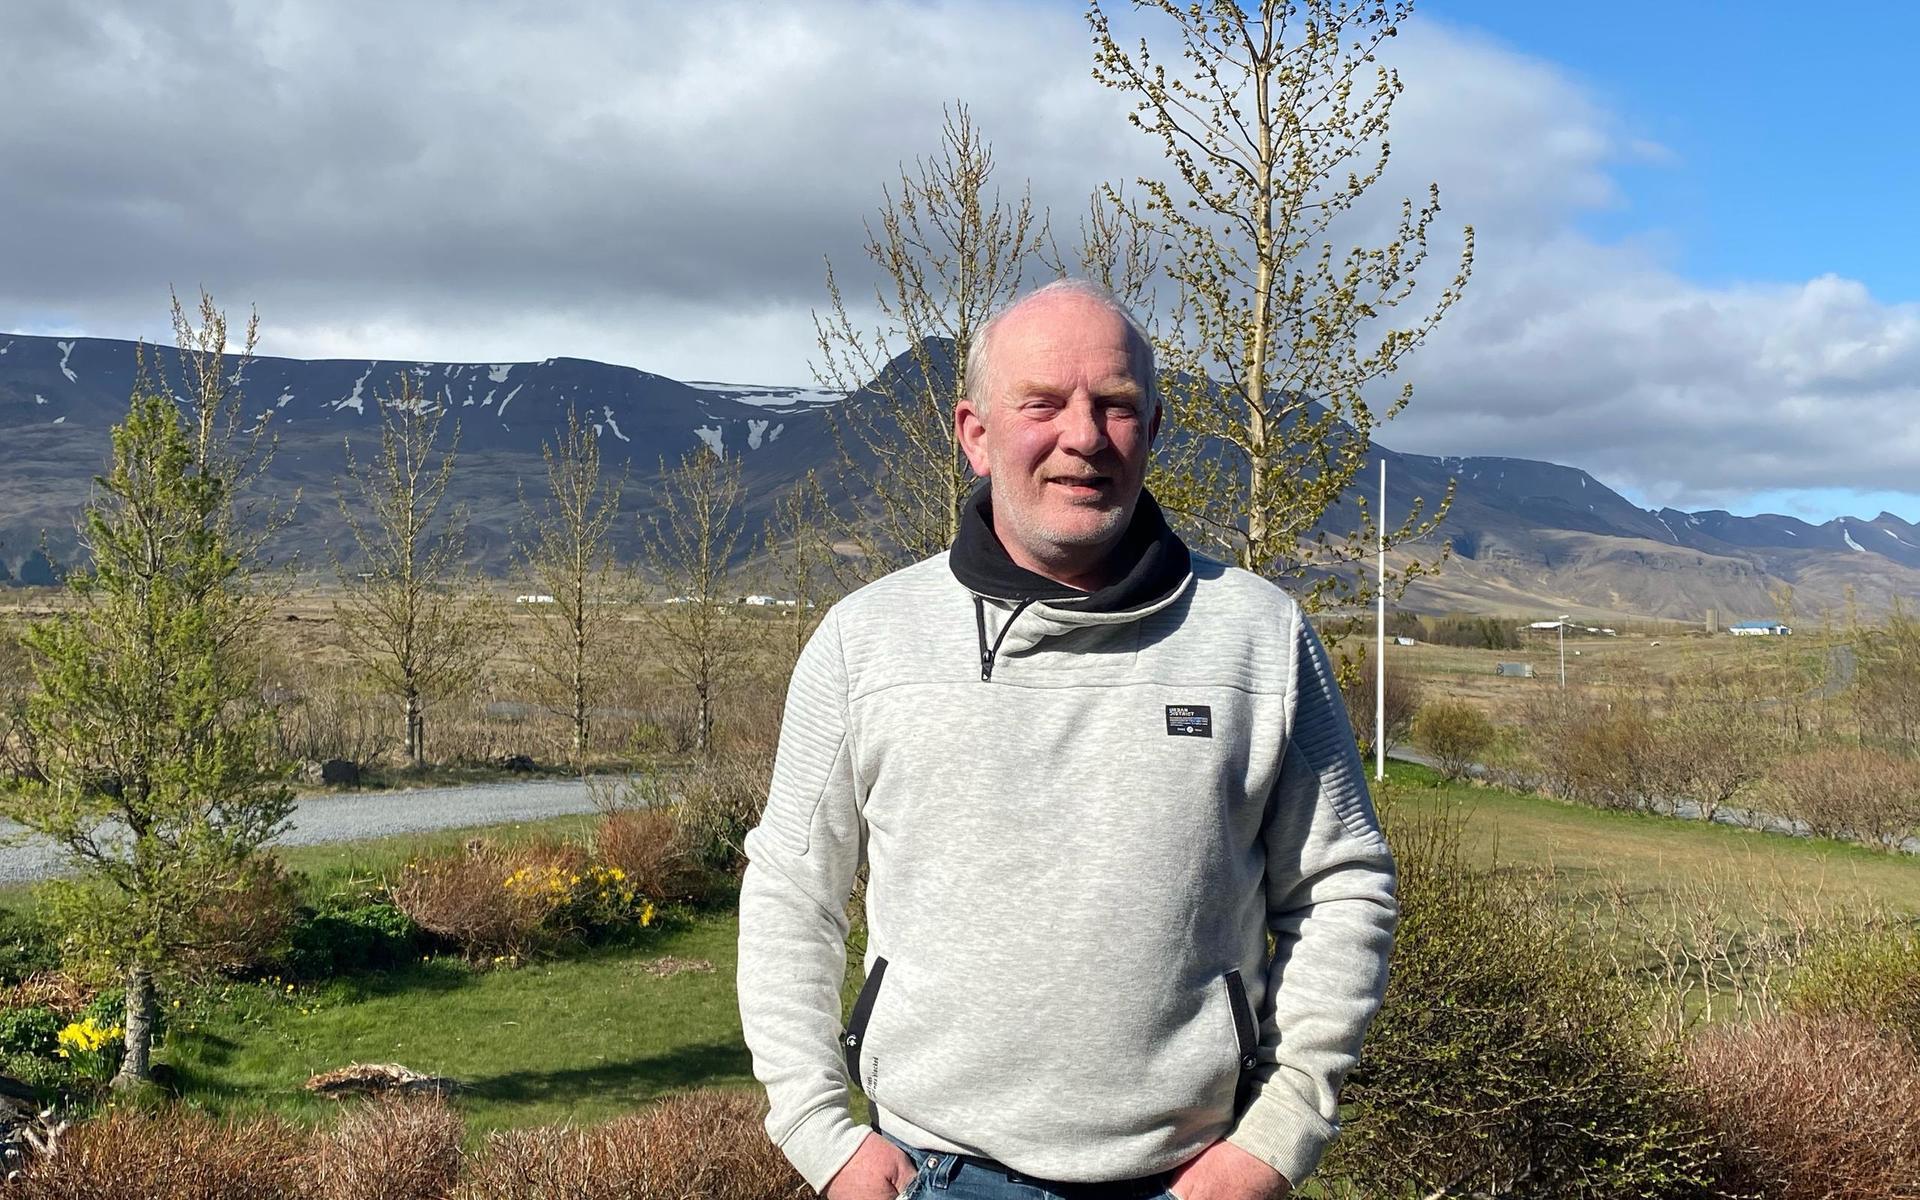 Expendo utsågs nyligen till årets företag i Laholm 2020. Detta trots att koncernens vd Gudjon Halldorsson fått hålla sig på Island i princip hela året. Här syns han på sin gård Fitjar strax utanför Reykjavik.